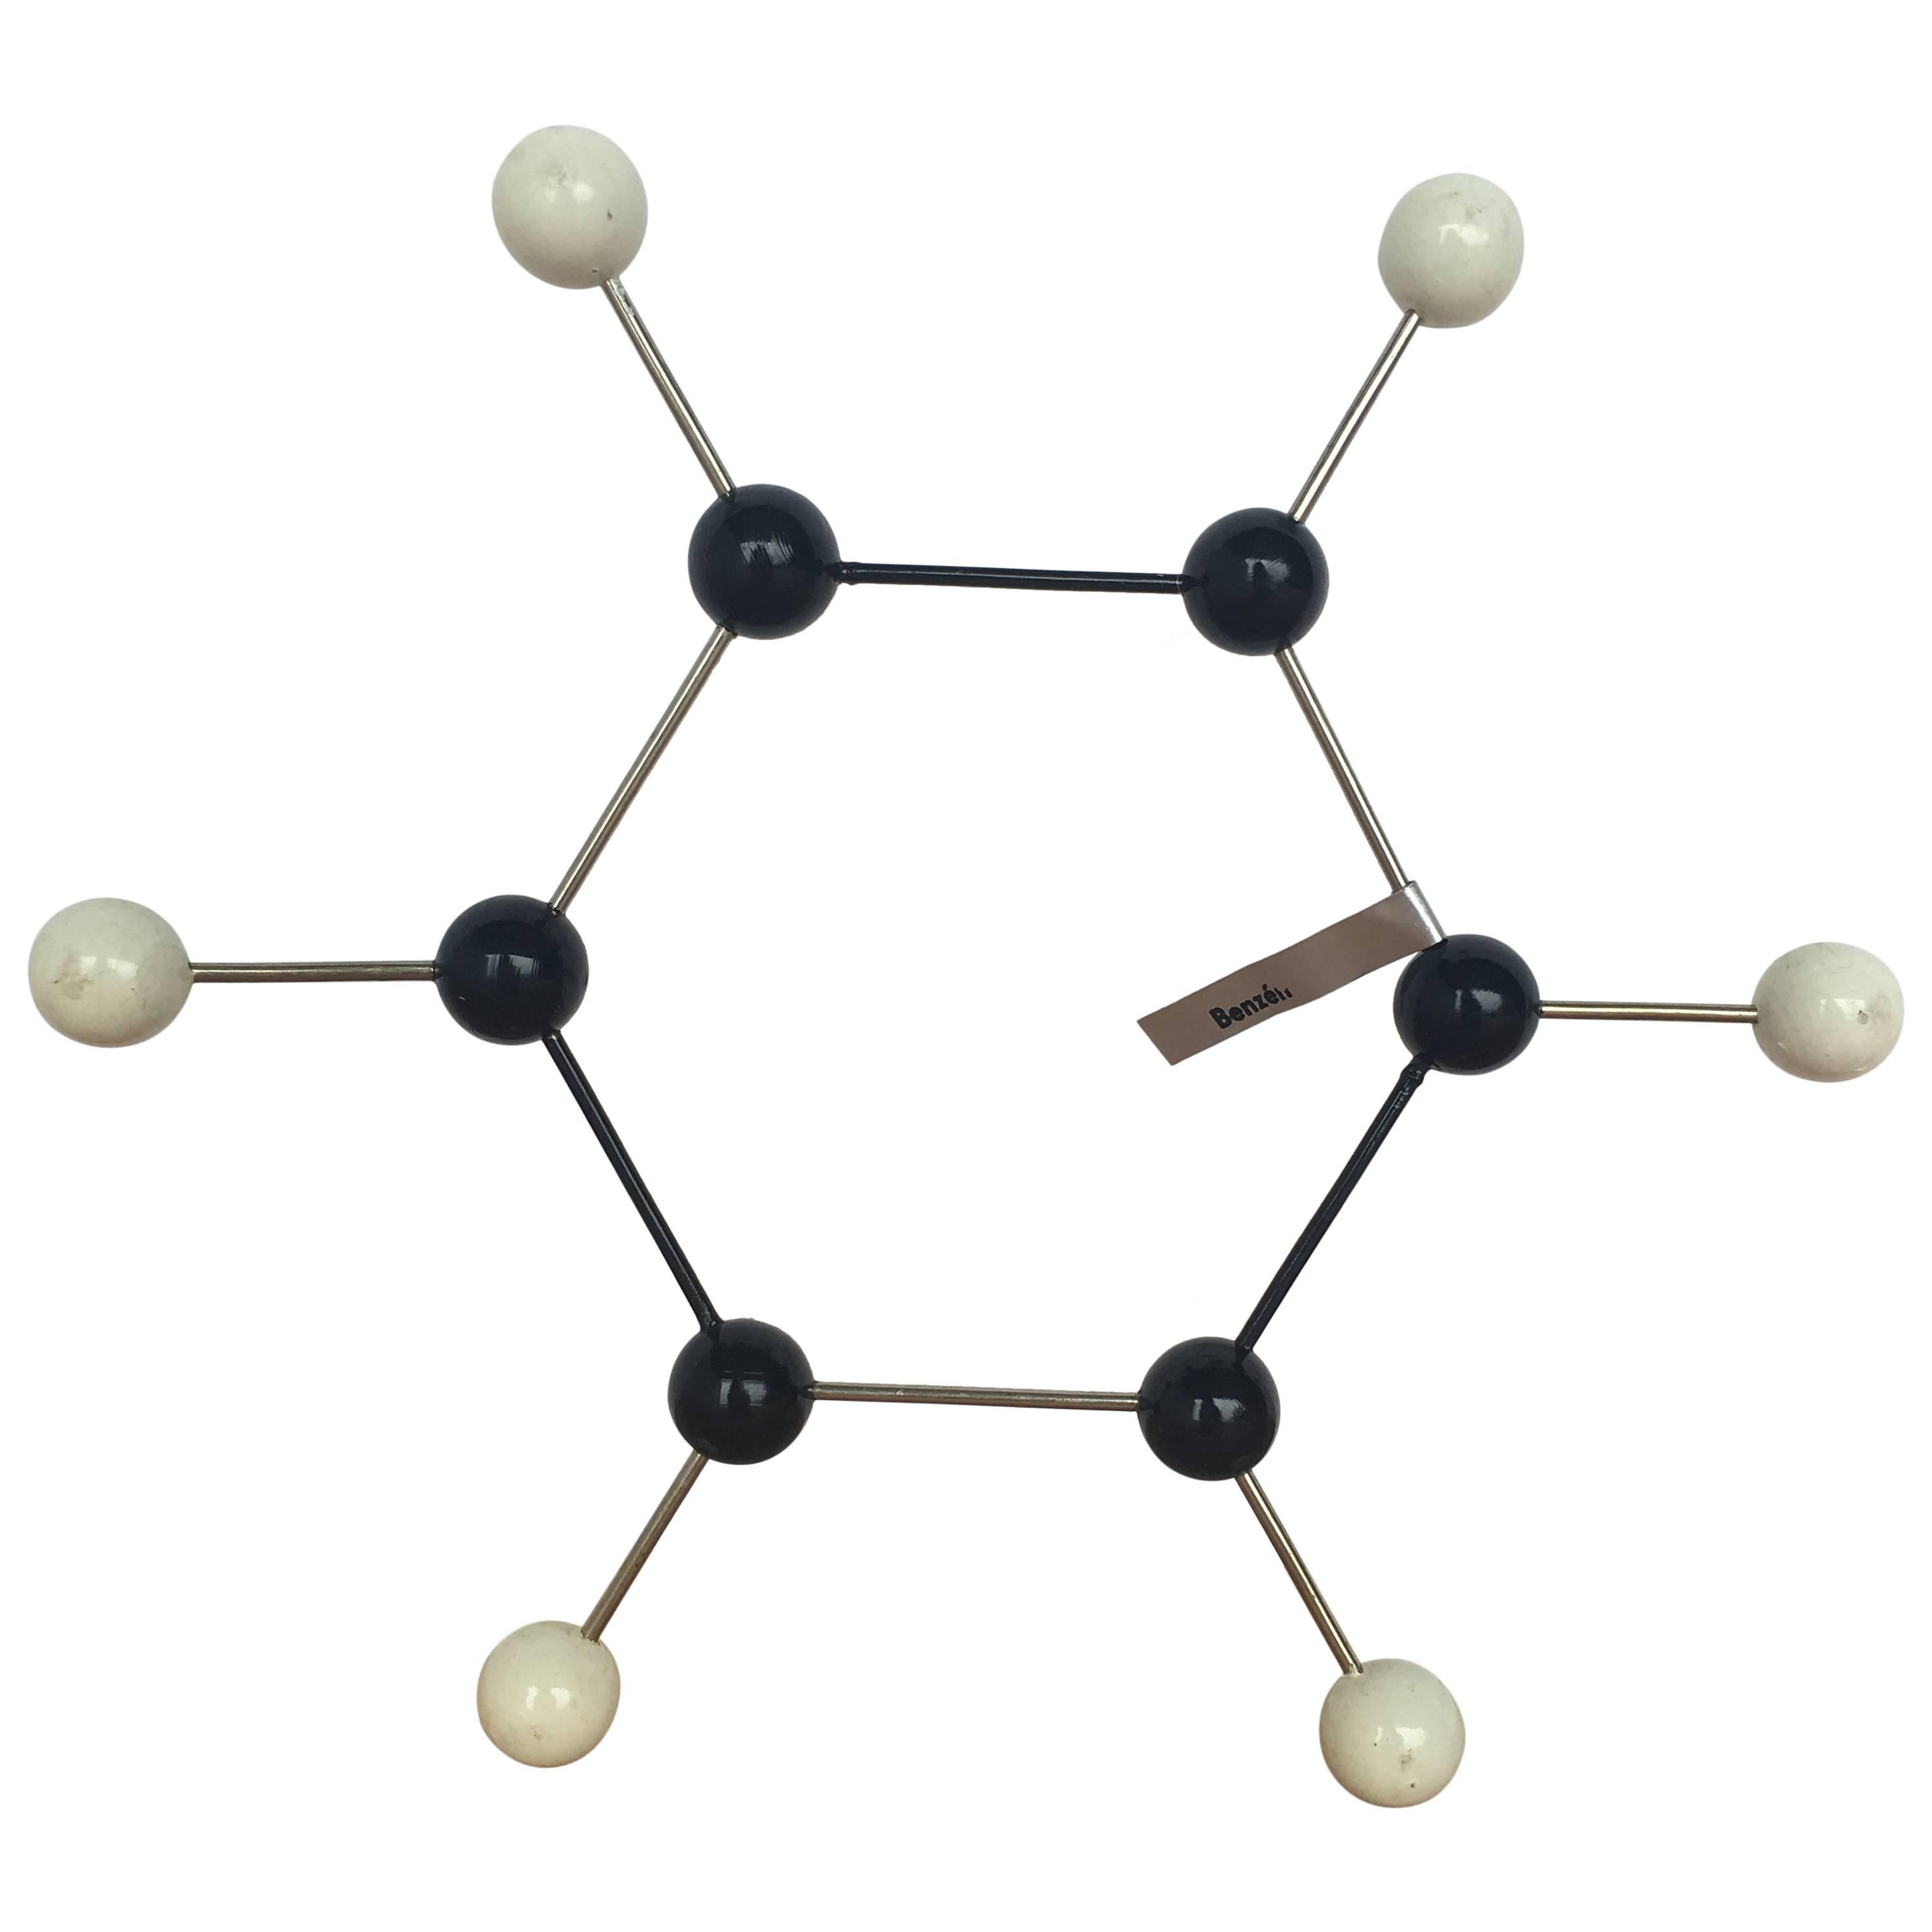 Kugel- und Stick Molecular-Modell von Benzene, Vintage